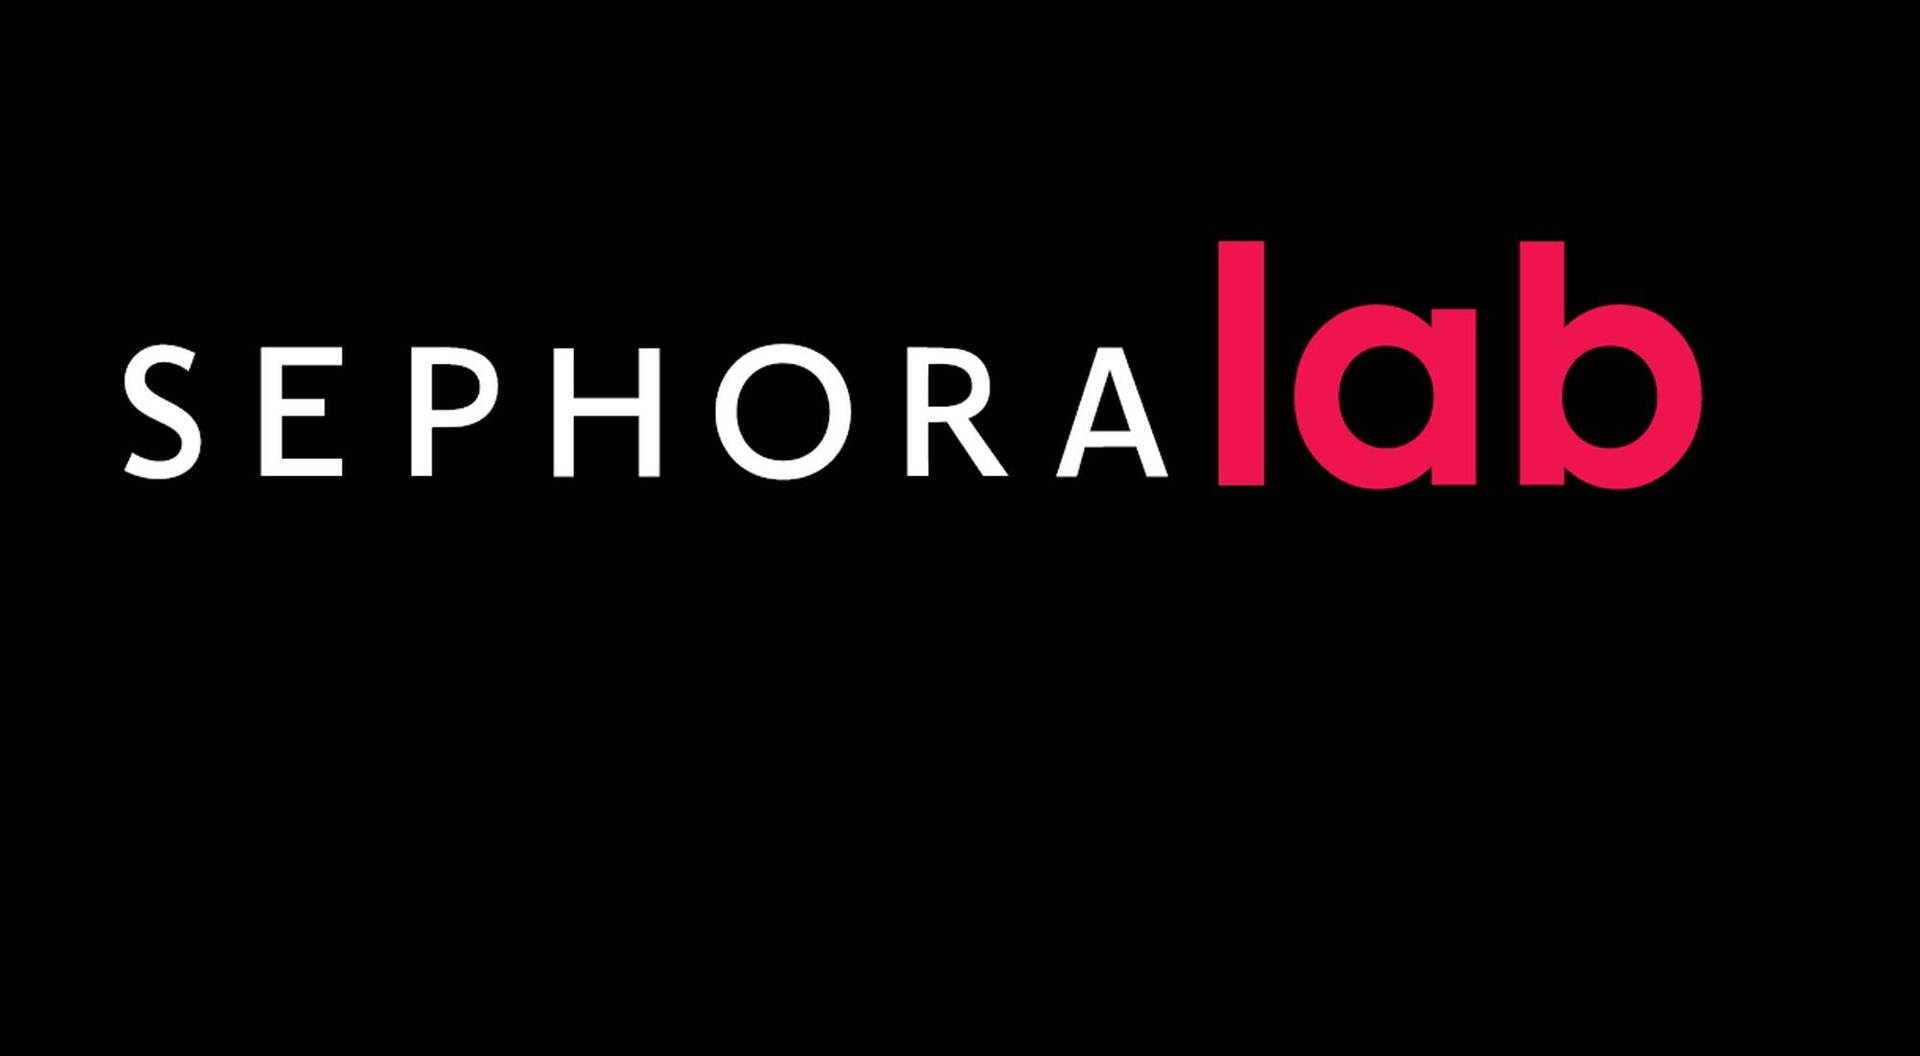 Sephora Lab Logo Wallpaper